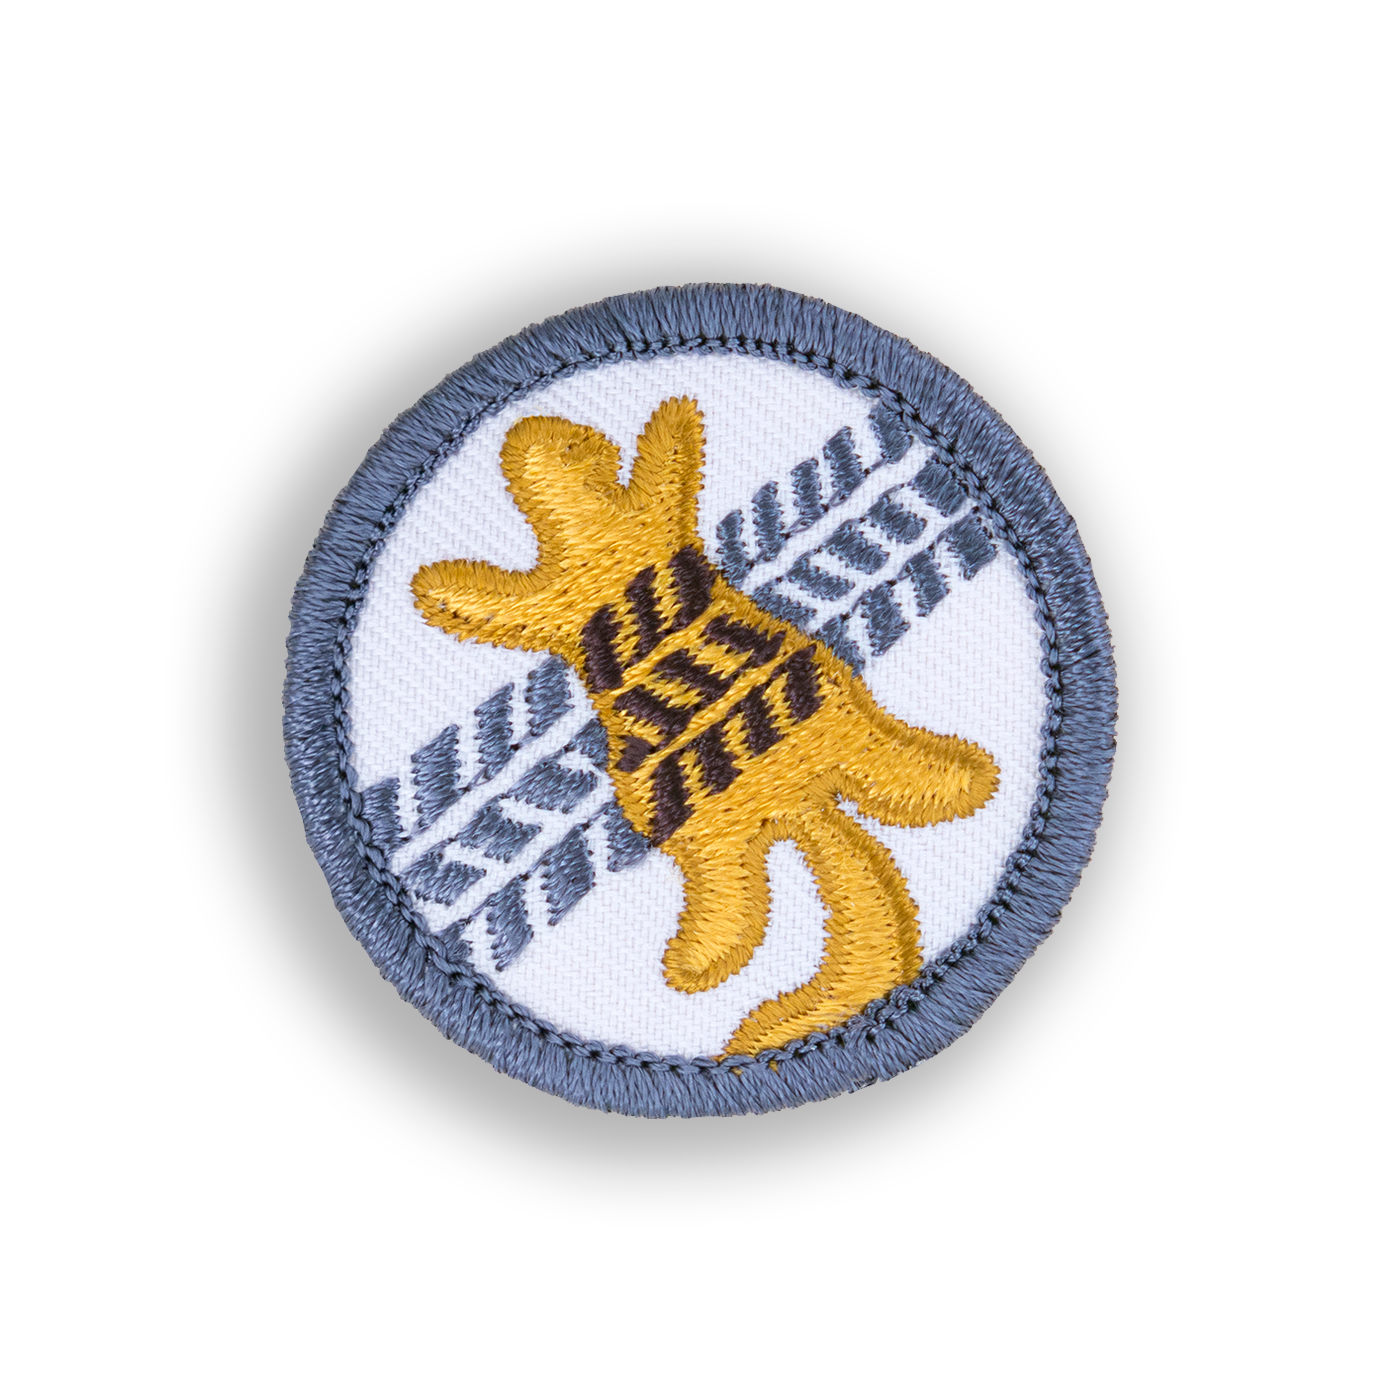 Roadkill Patch | Demerit Wear - Fake Merit Badges